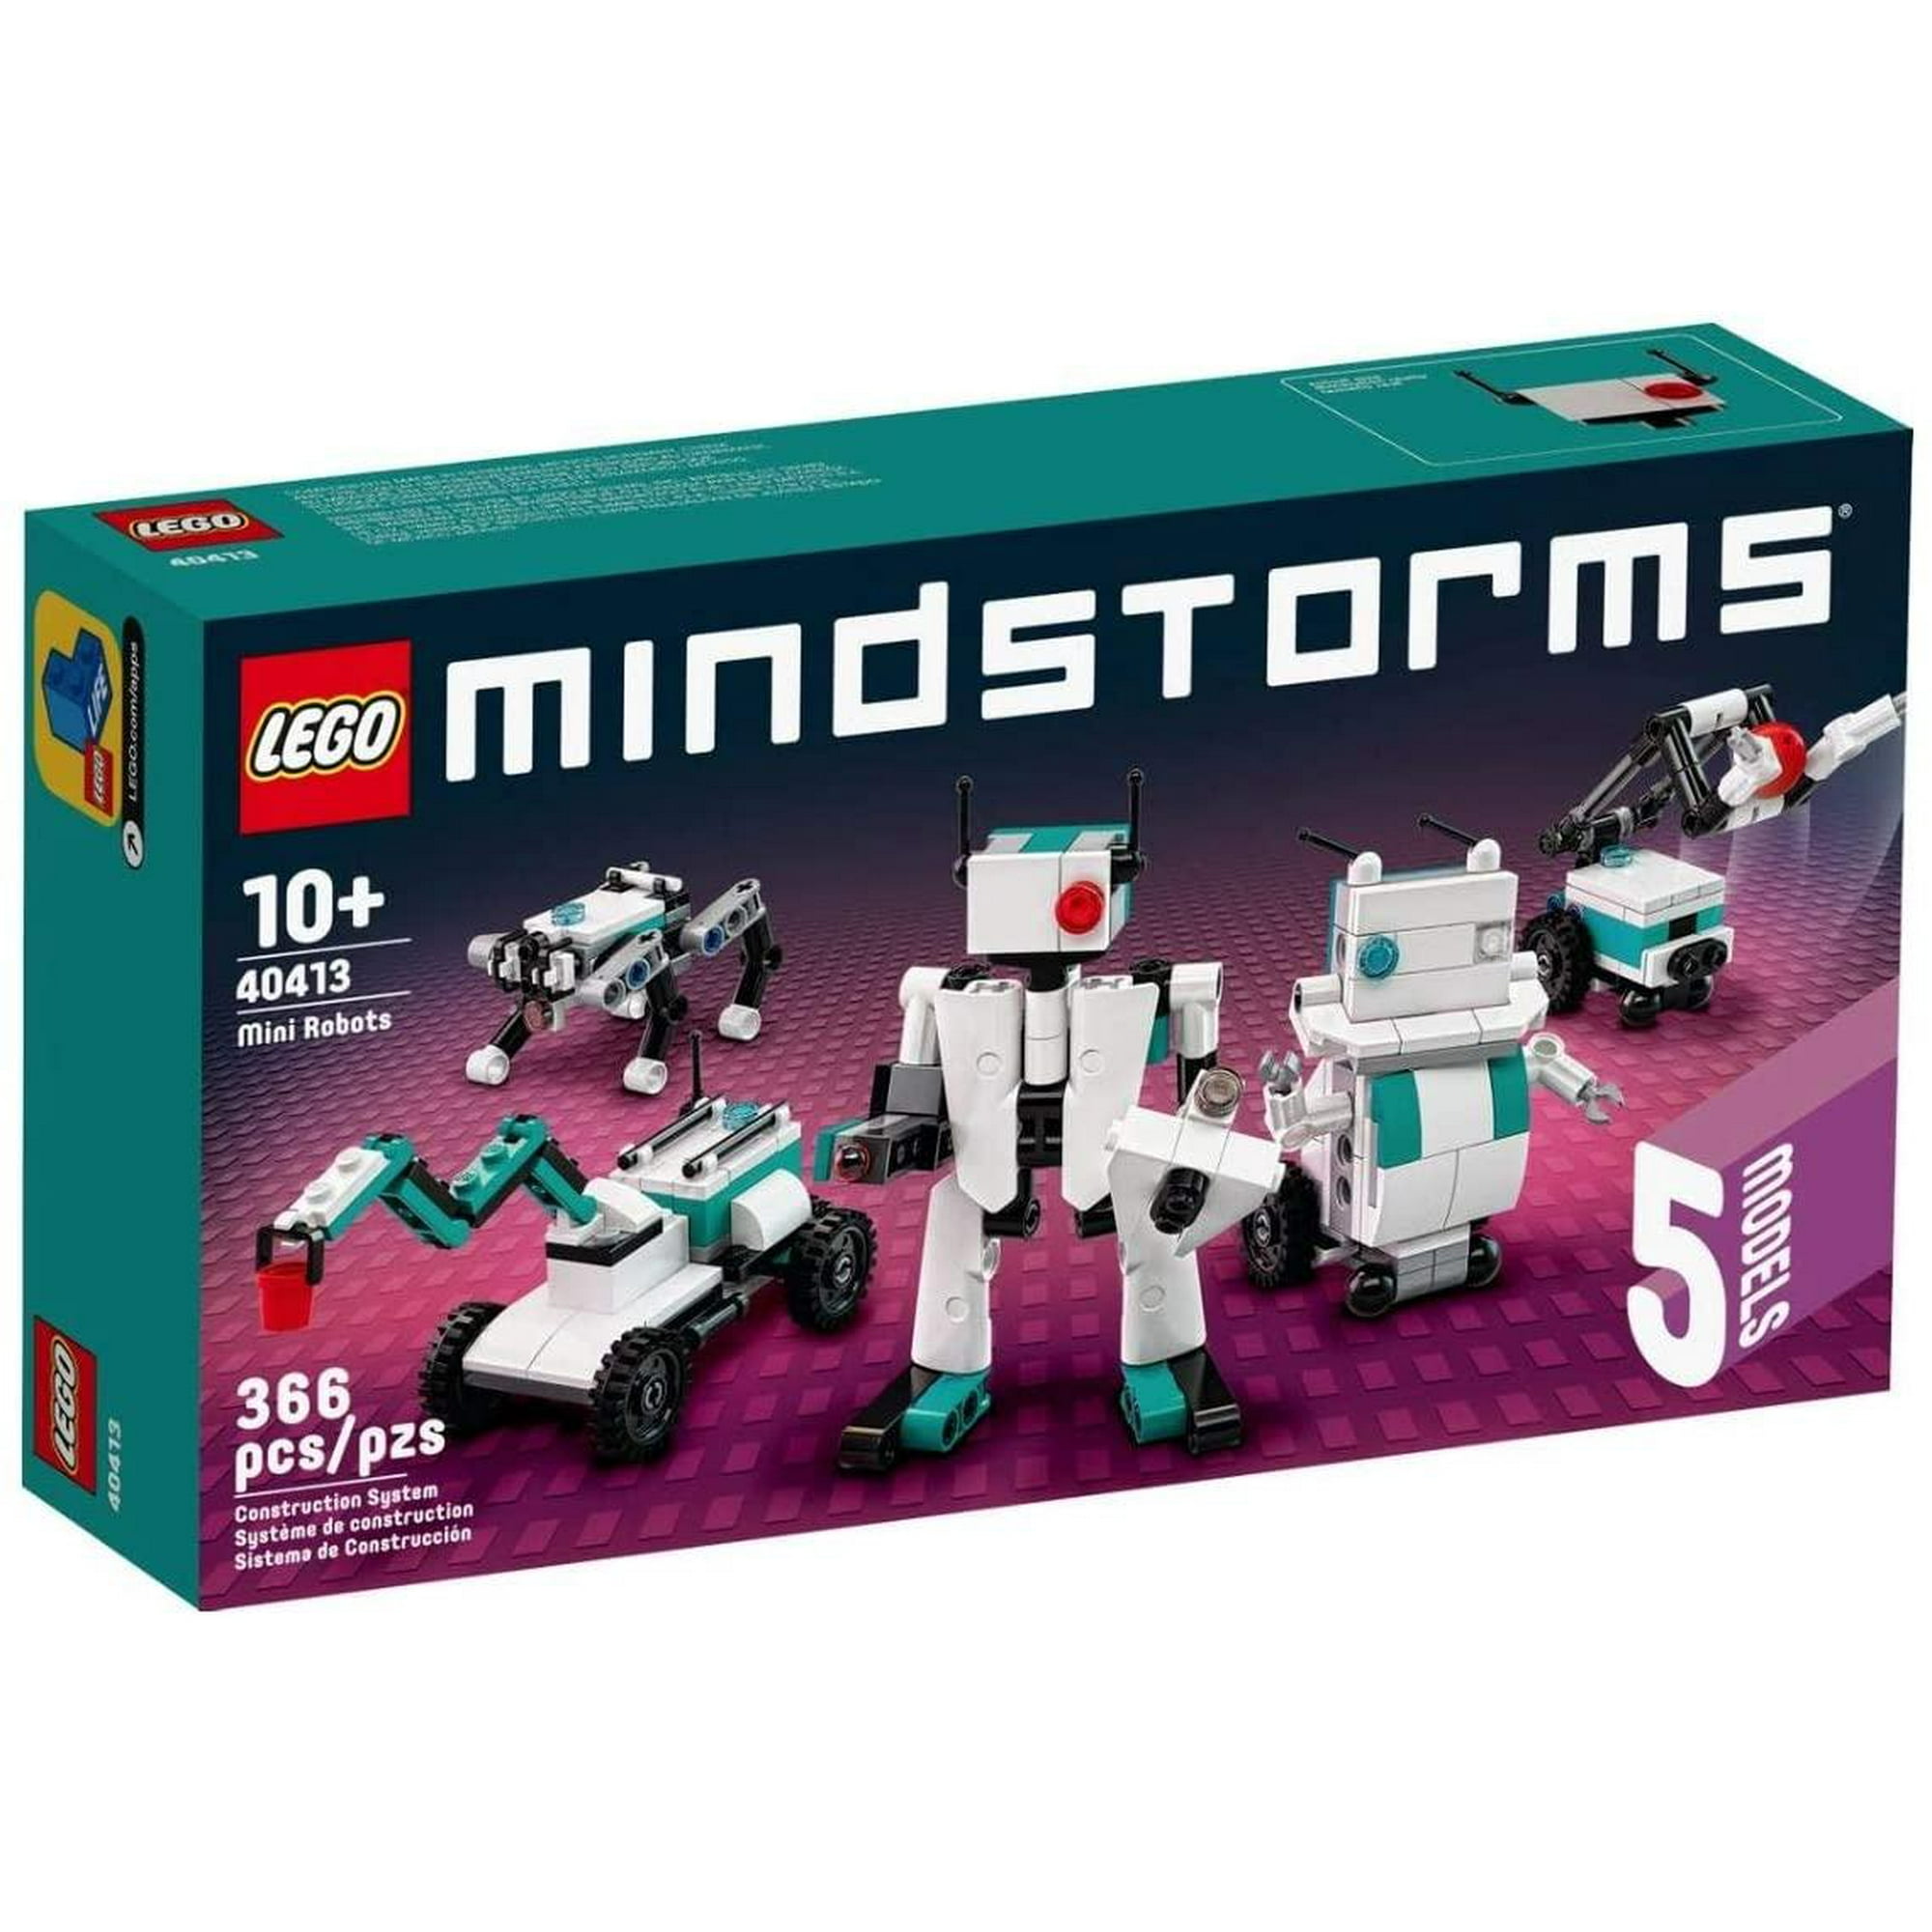 Comprar Lego Mindstorms - Caja De Herramientas Creativas. de LEGO